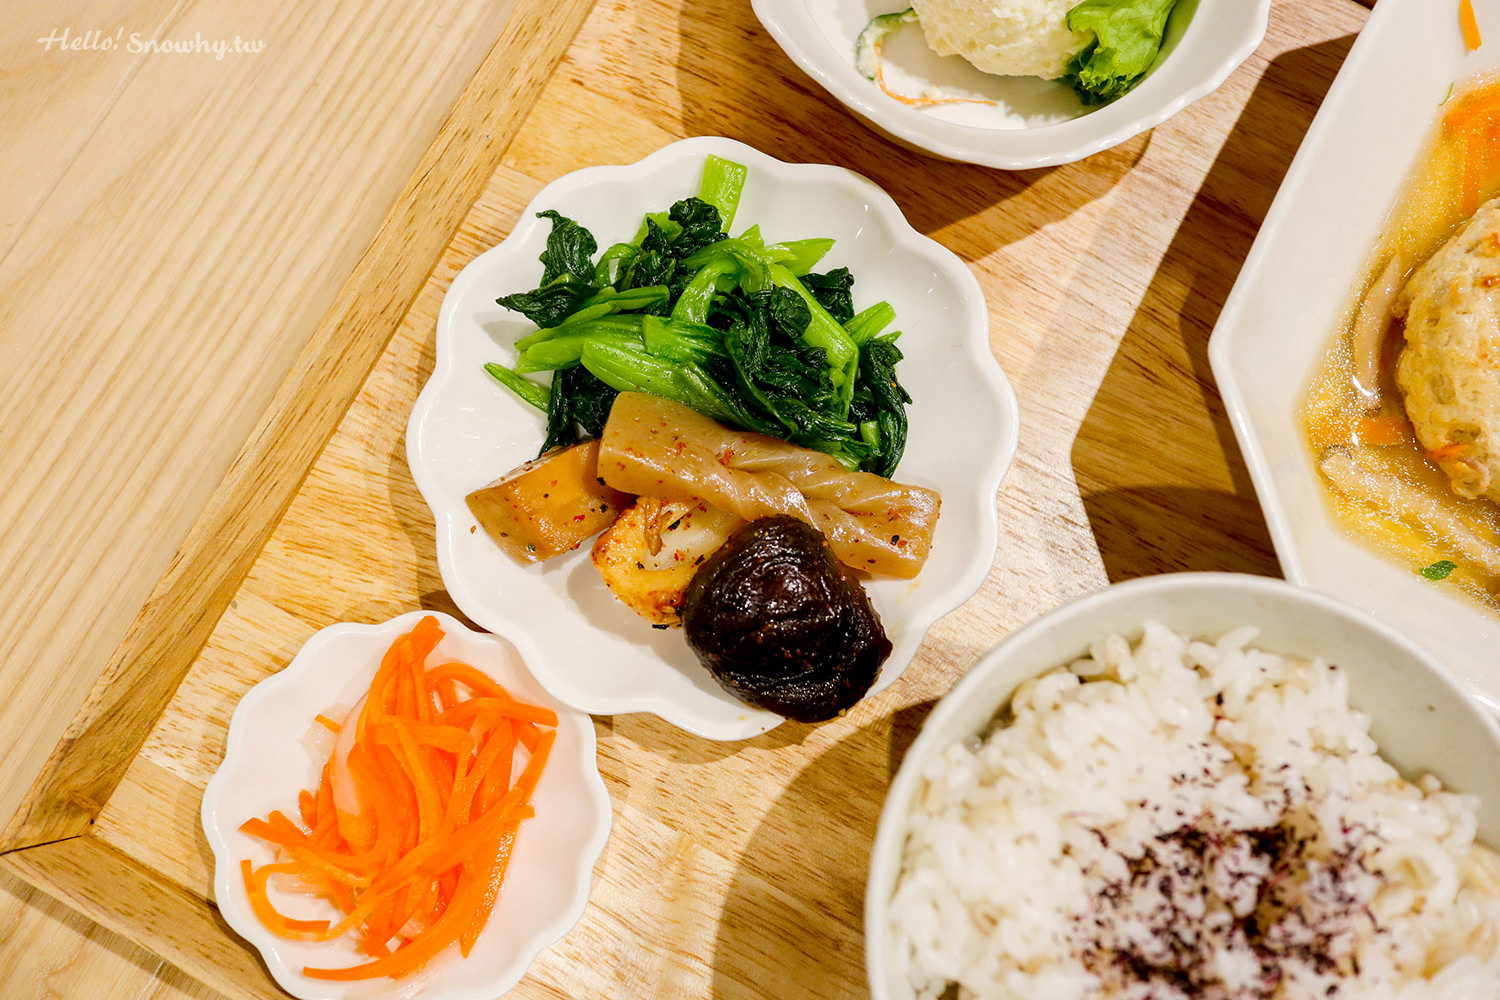 新竹美食,新竹火車站美食,柚子,Pomelo's Home,日式家庭料理,新竹下午茶,新竹日式料理